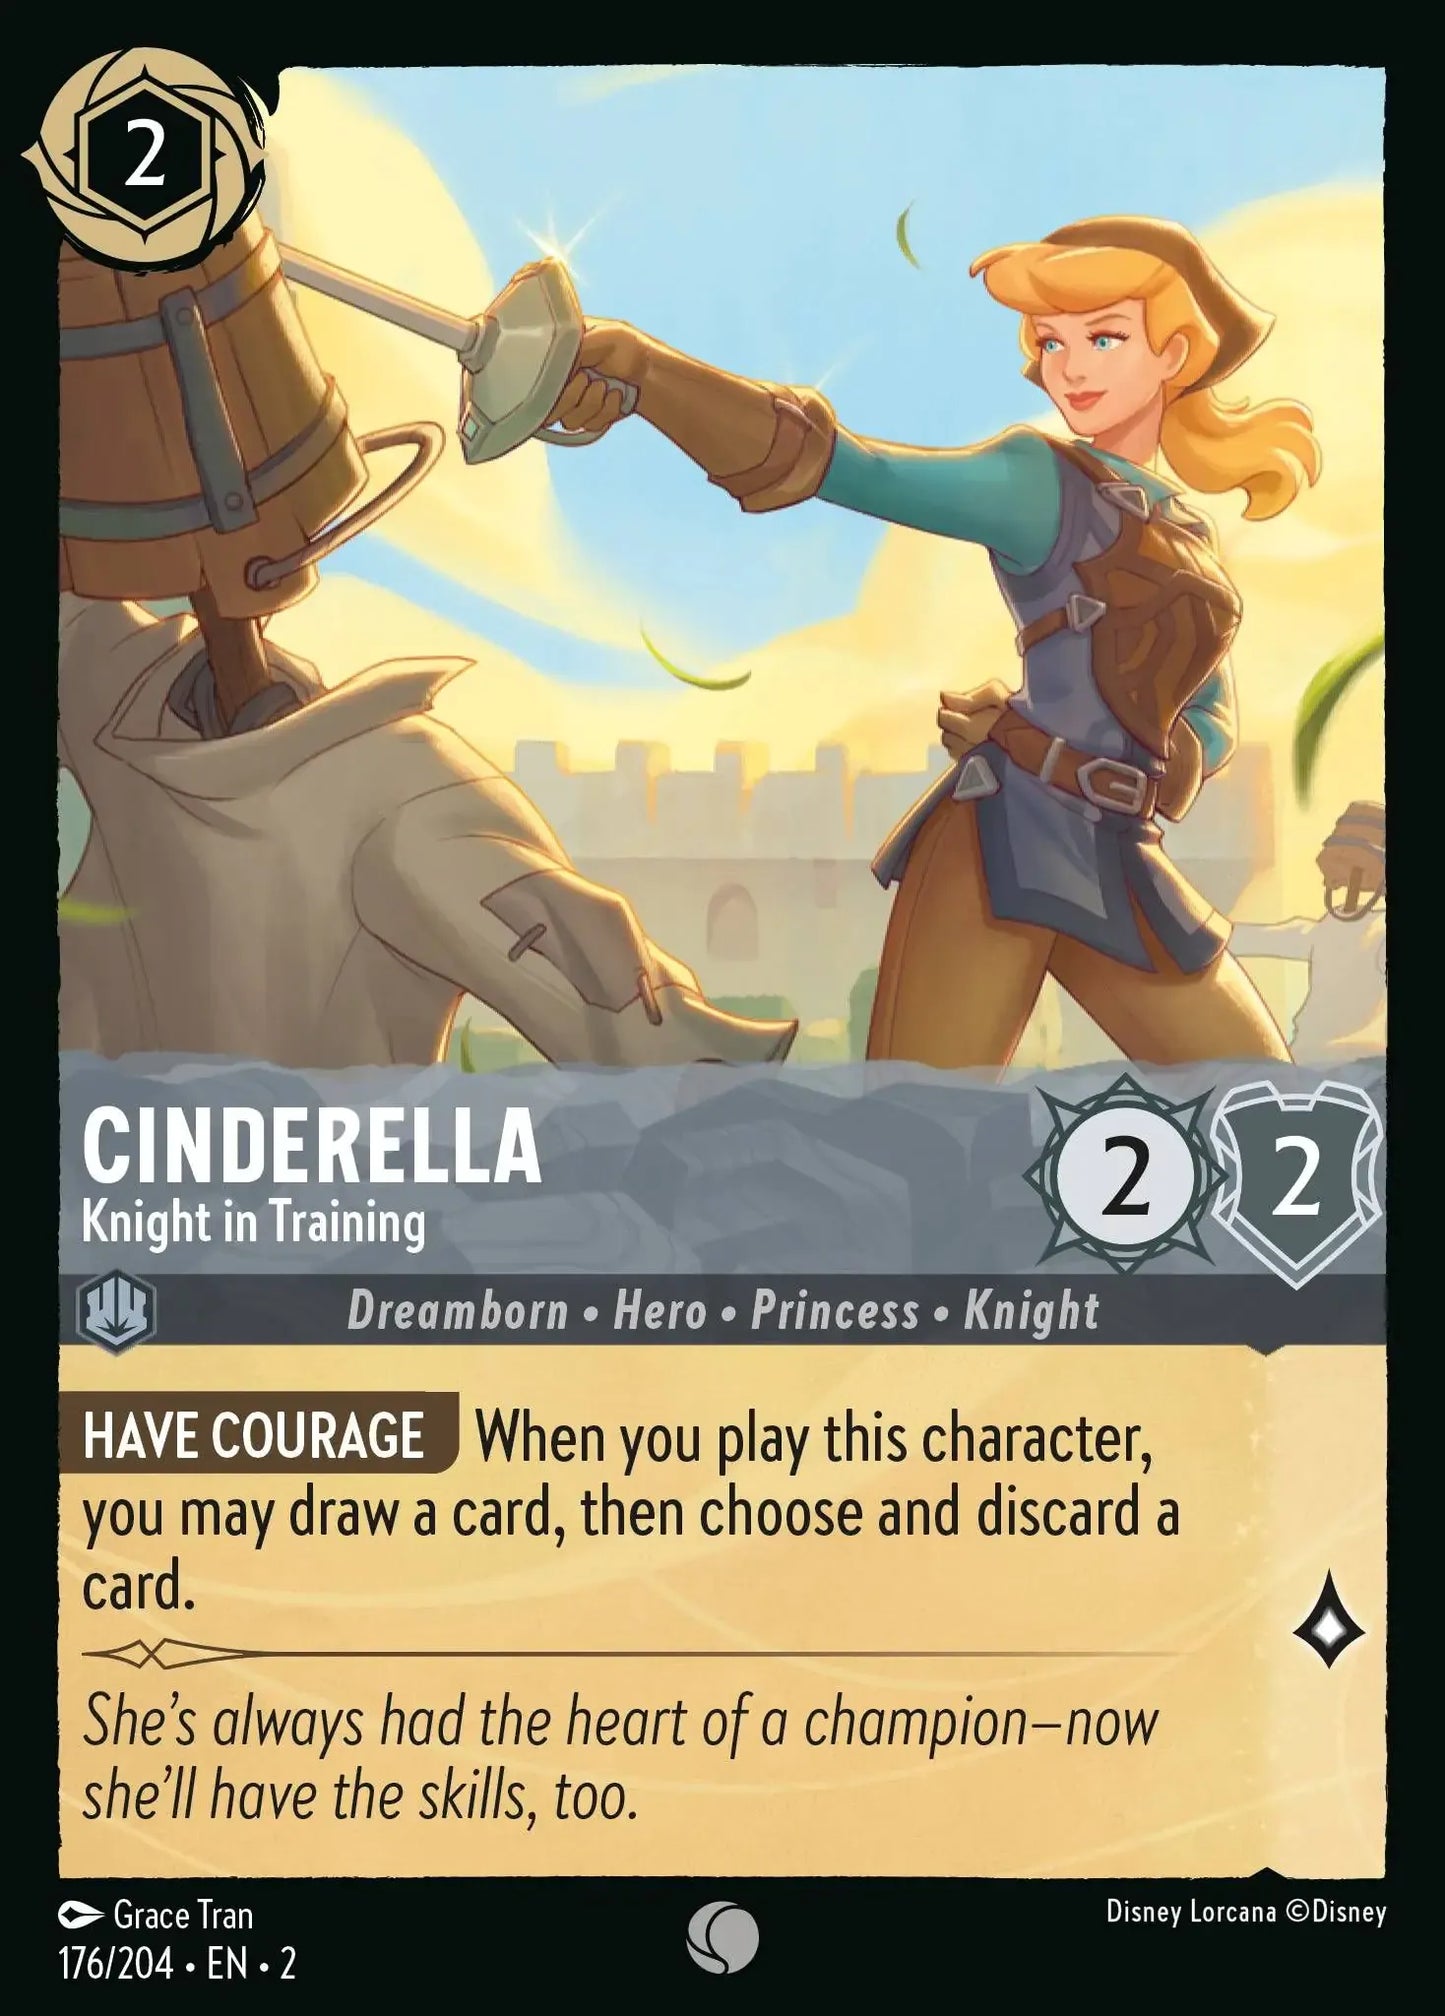 シンデレラ - 訓練中の騎士